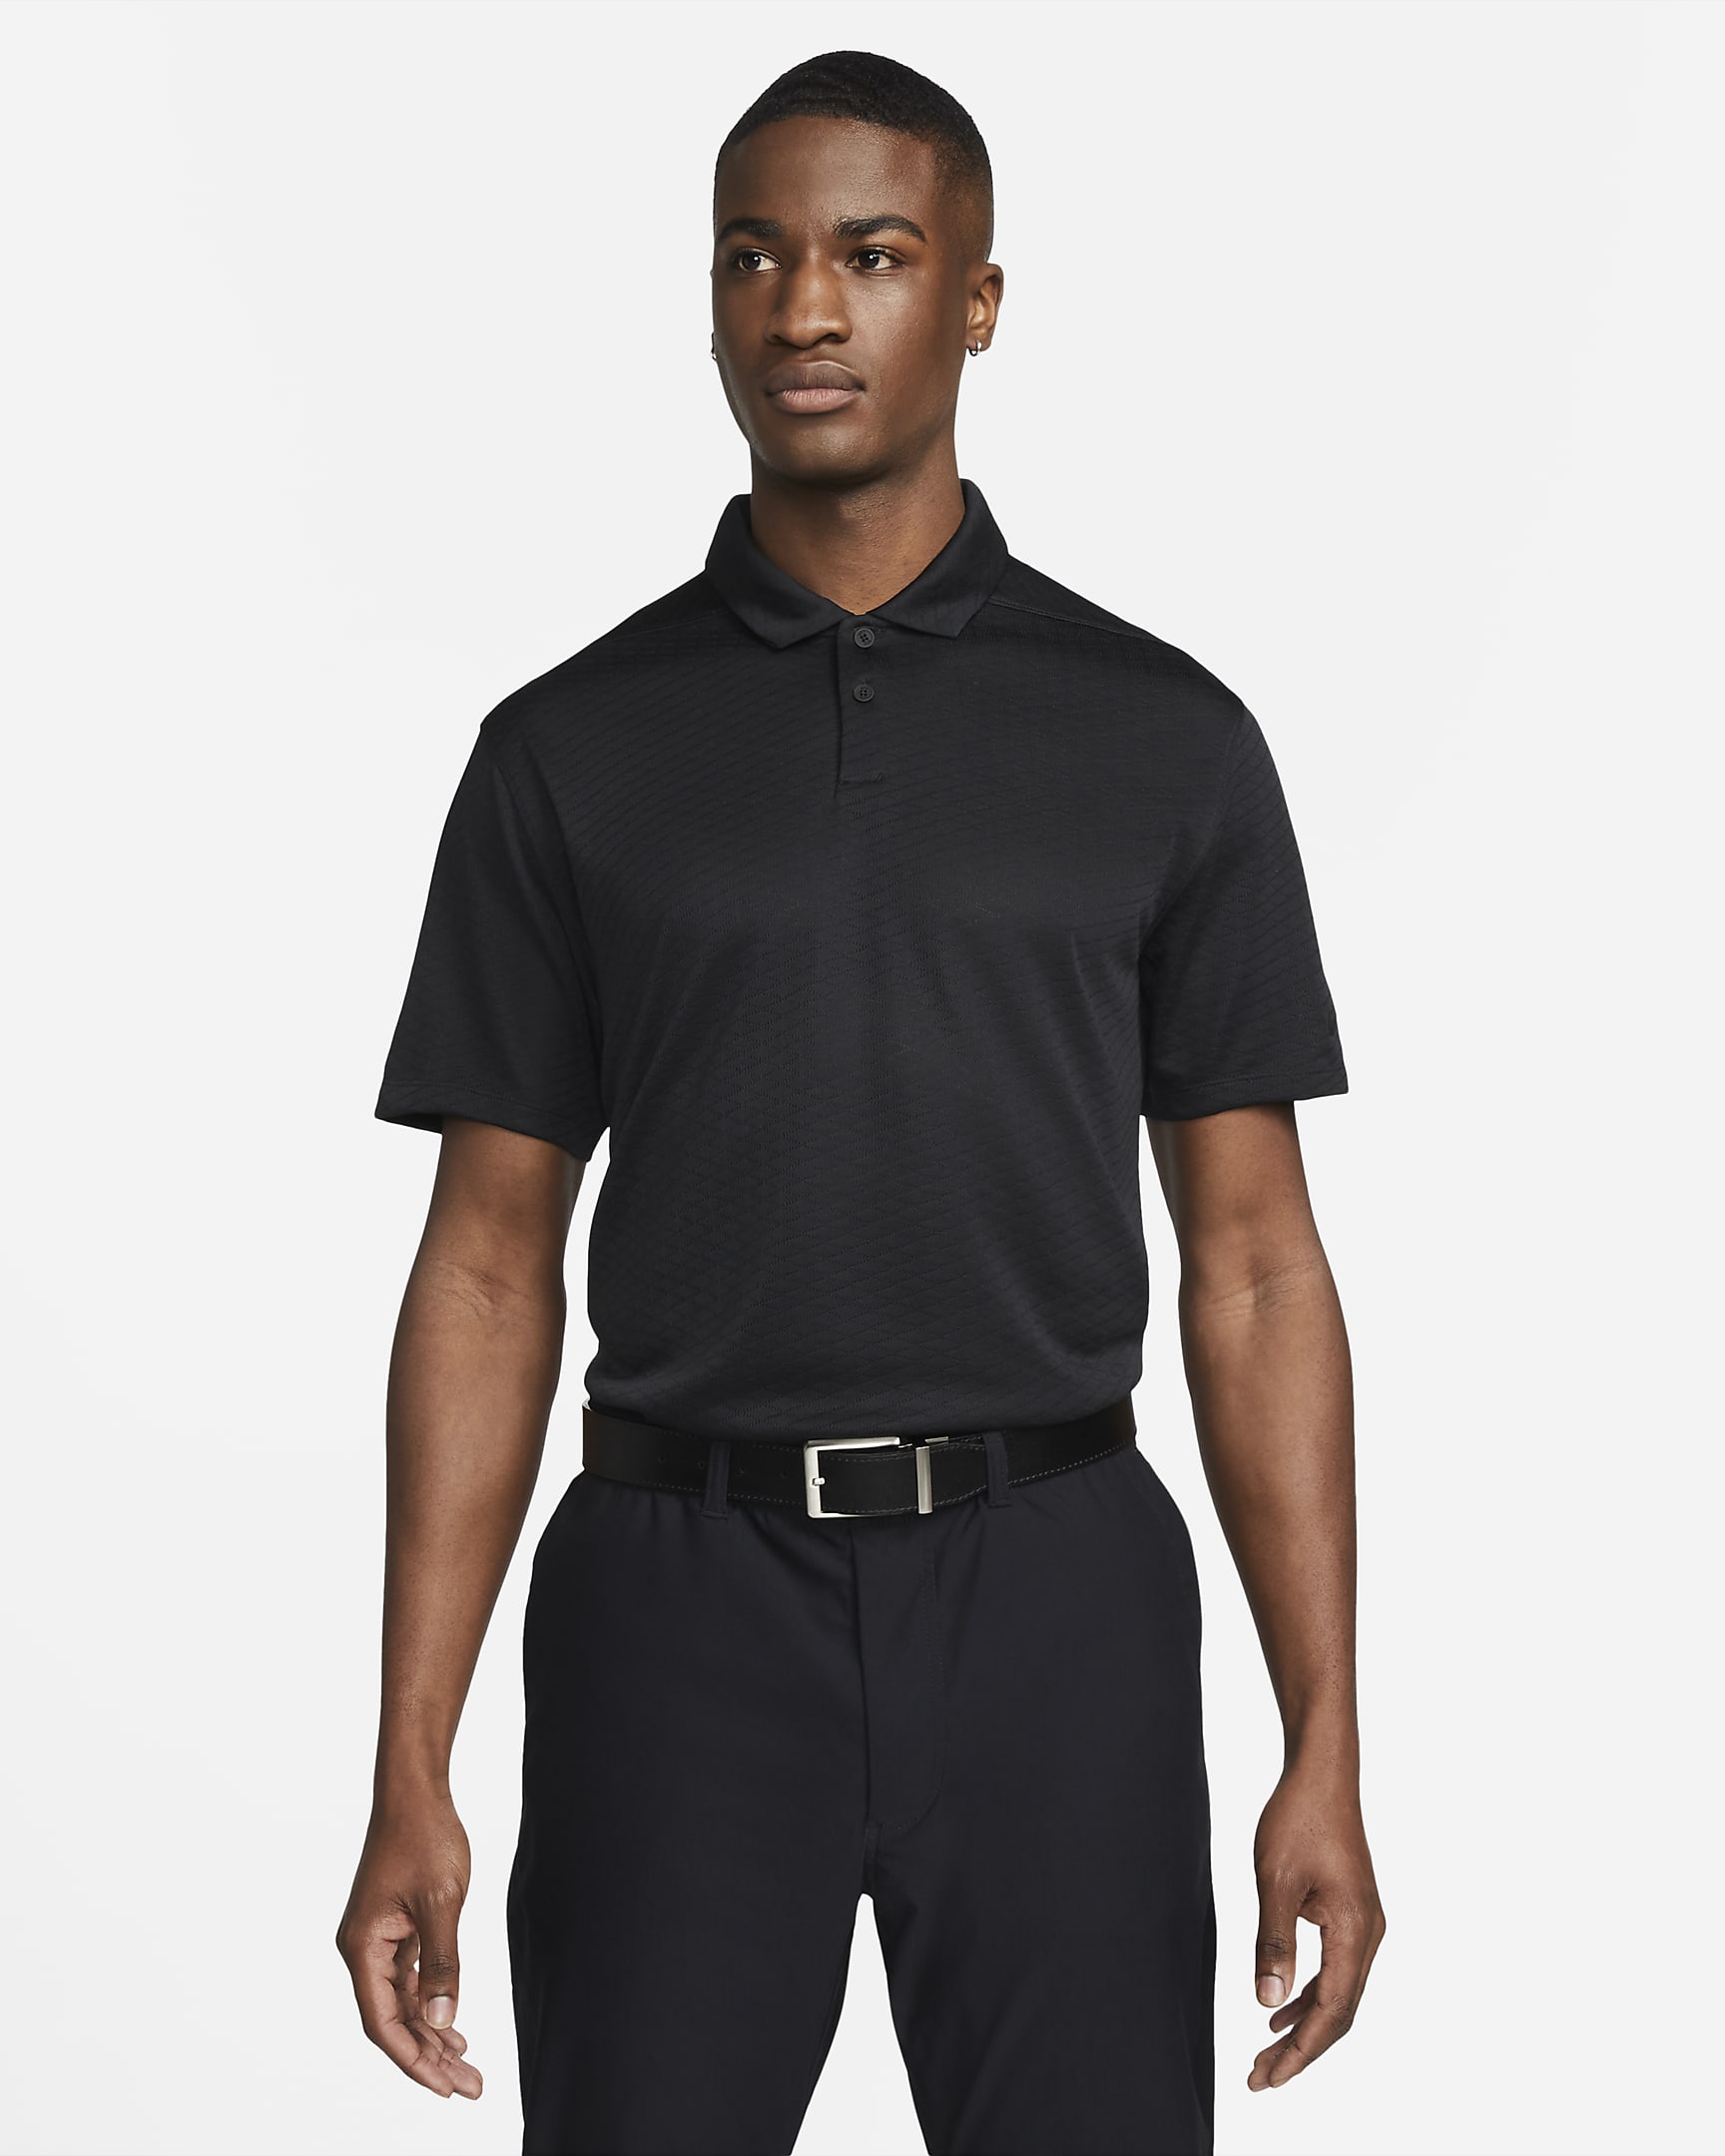 Nike Dri-FIT Vapor Men\'s Golf Polo Black/Black